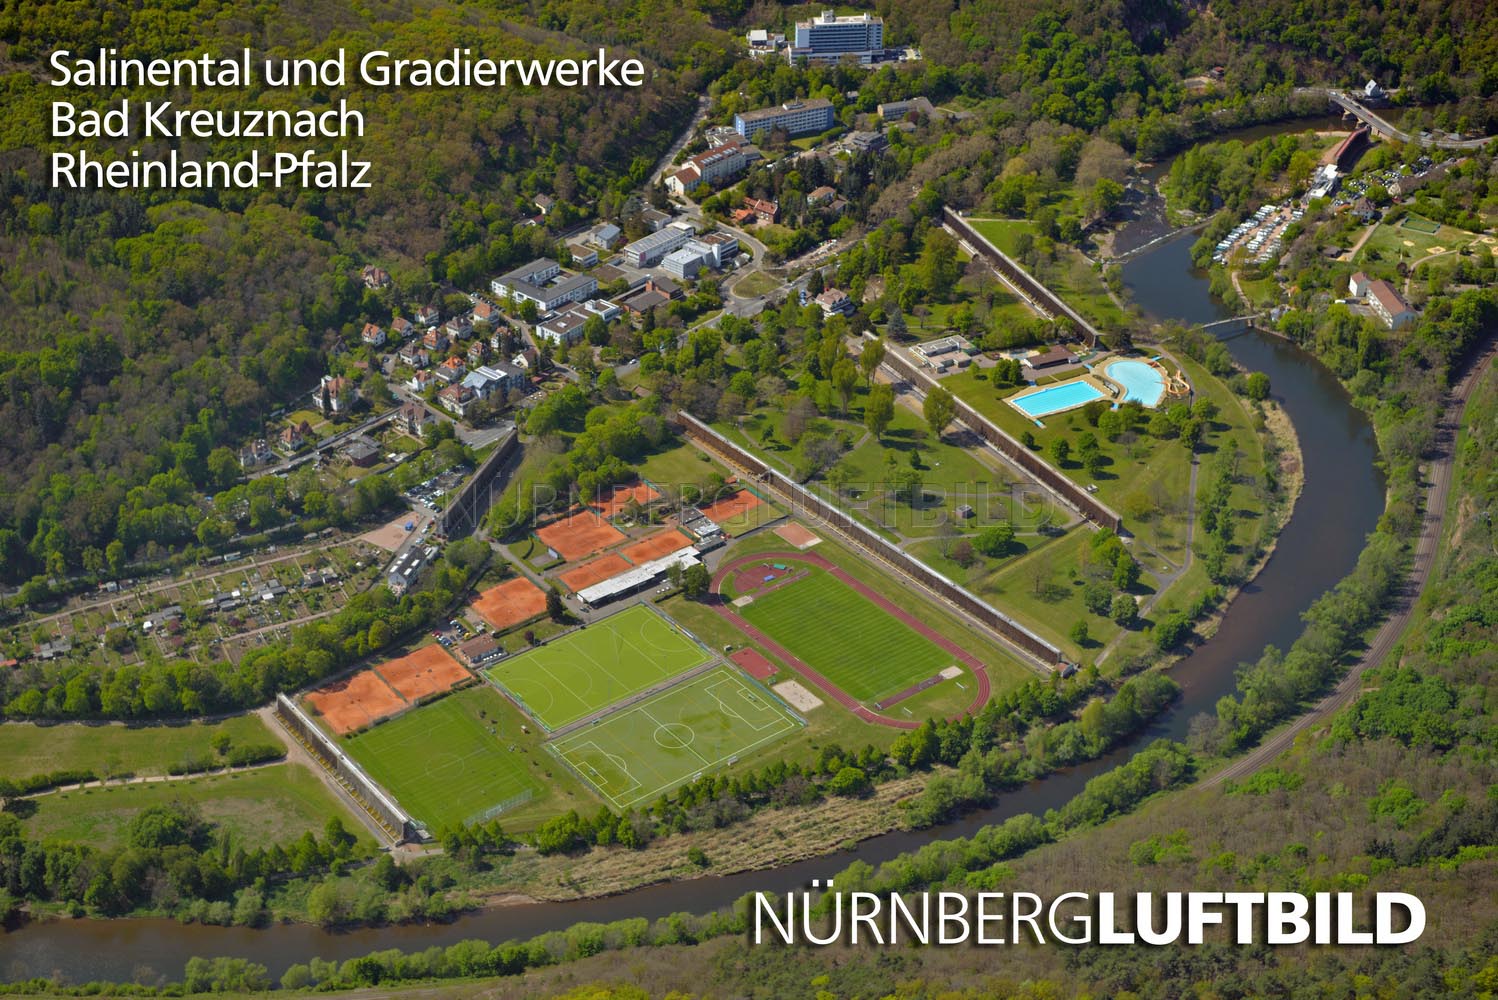 Salinental und Gradierwerke, Bad Kreuznach, Luftbild